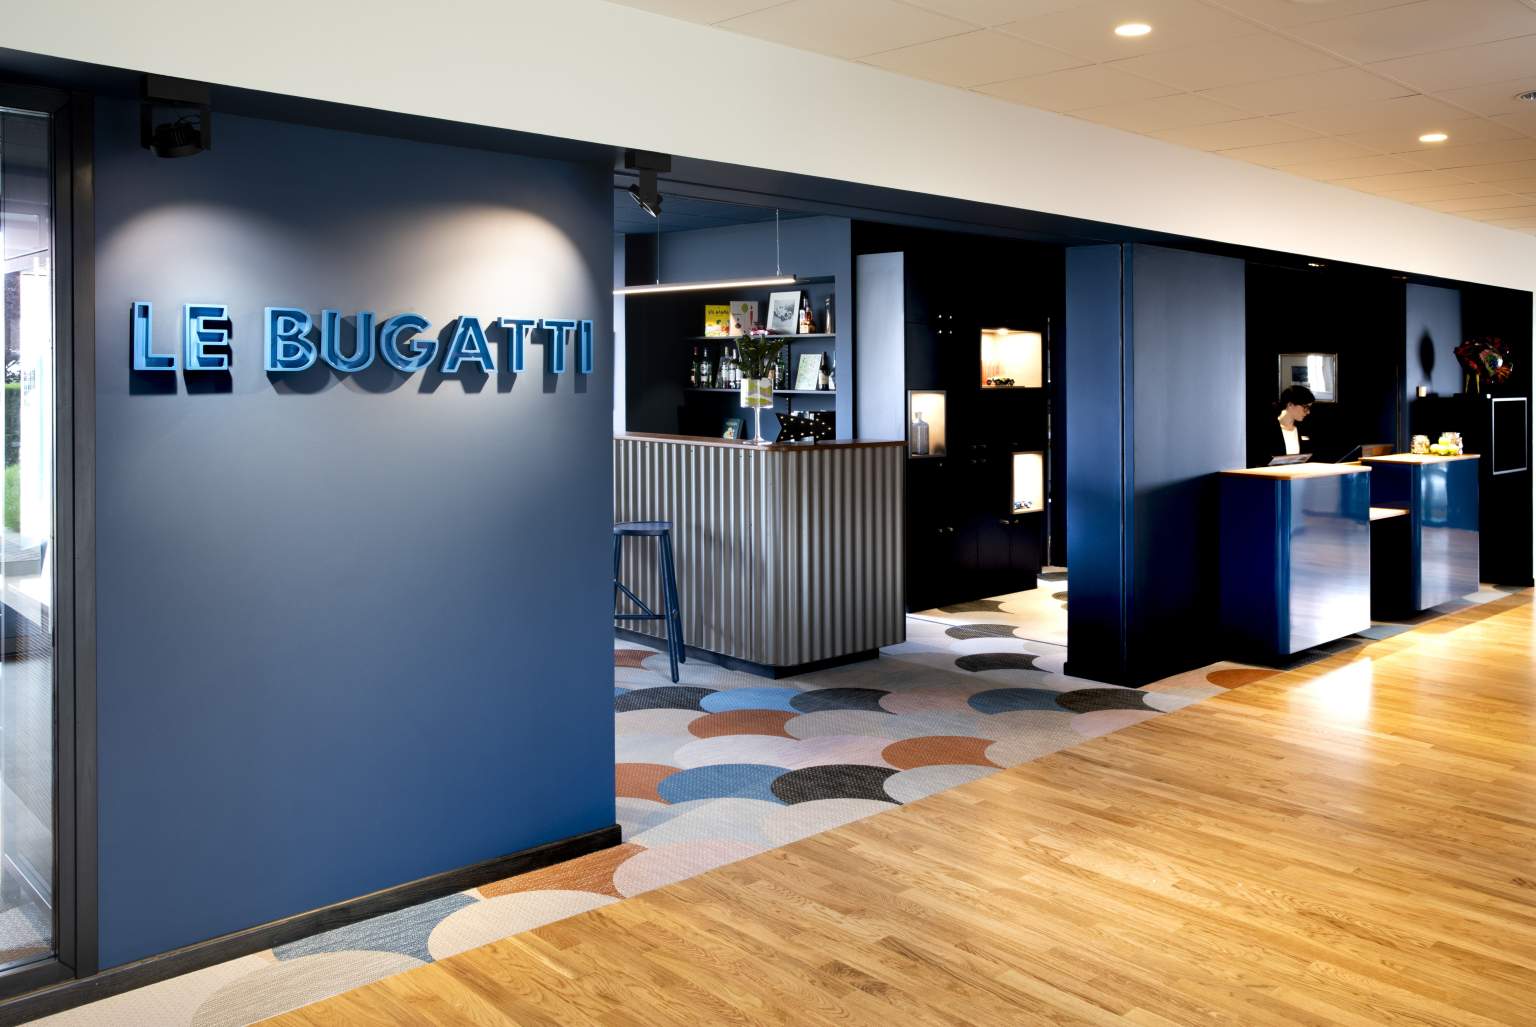 Le Bugatti Hotel and Bar Molsheim in Alsace